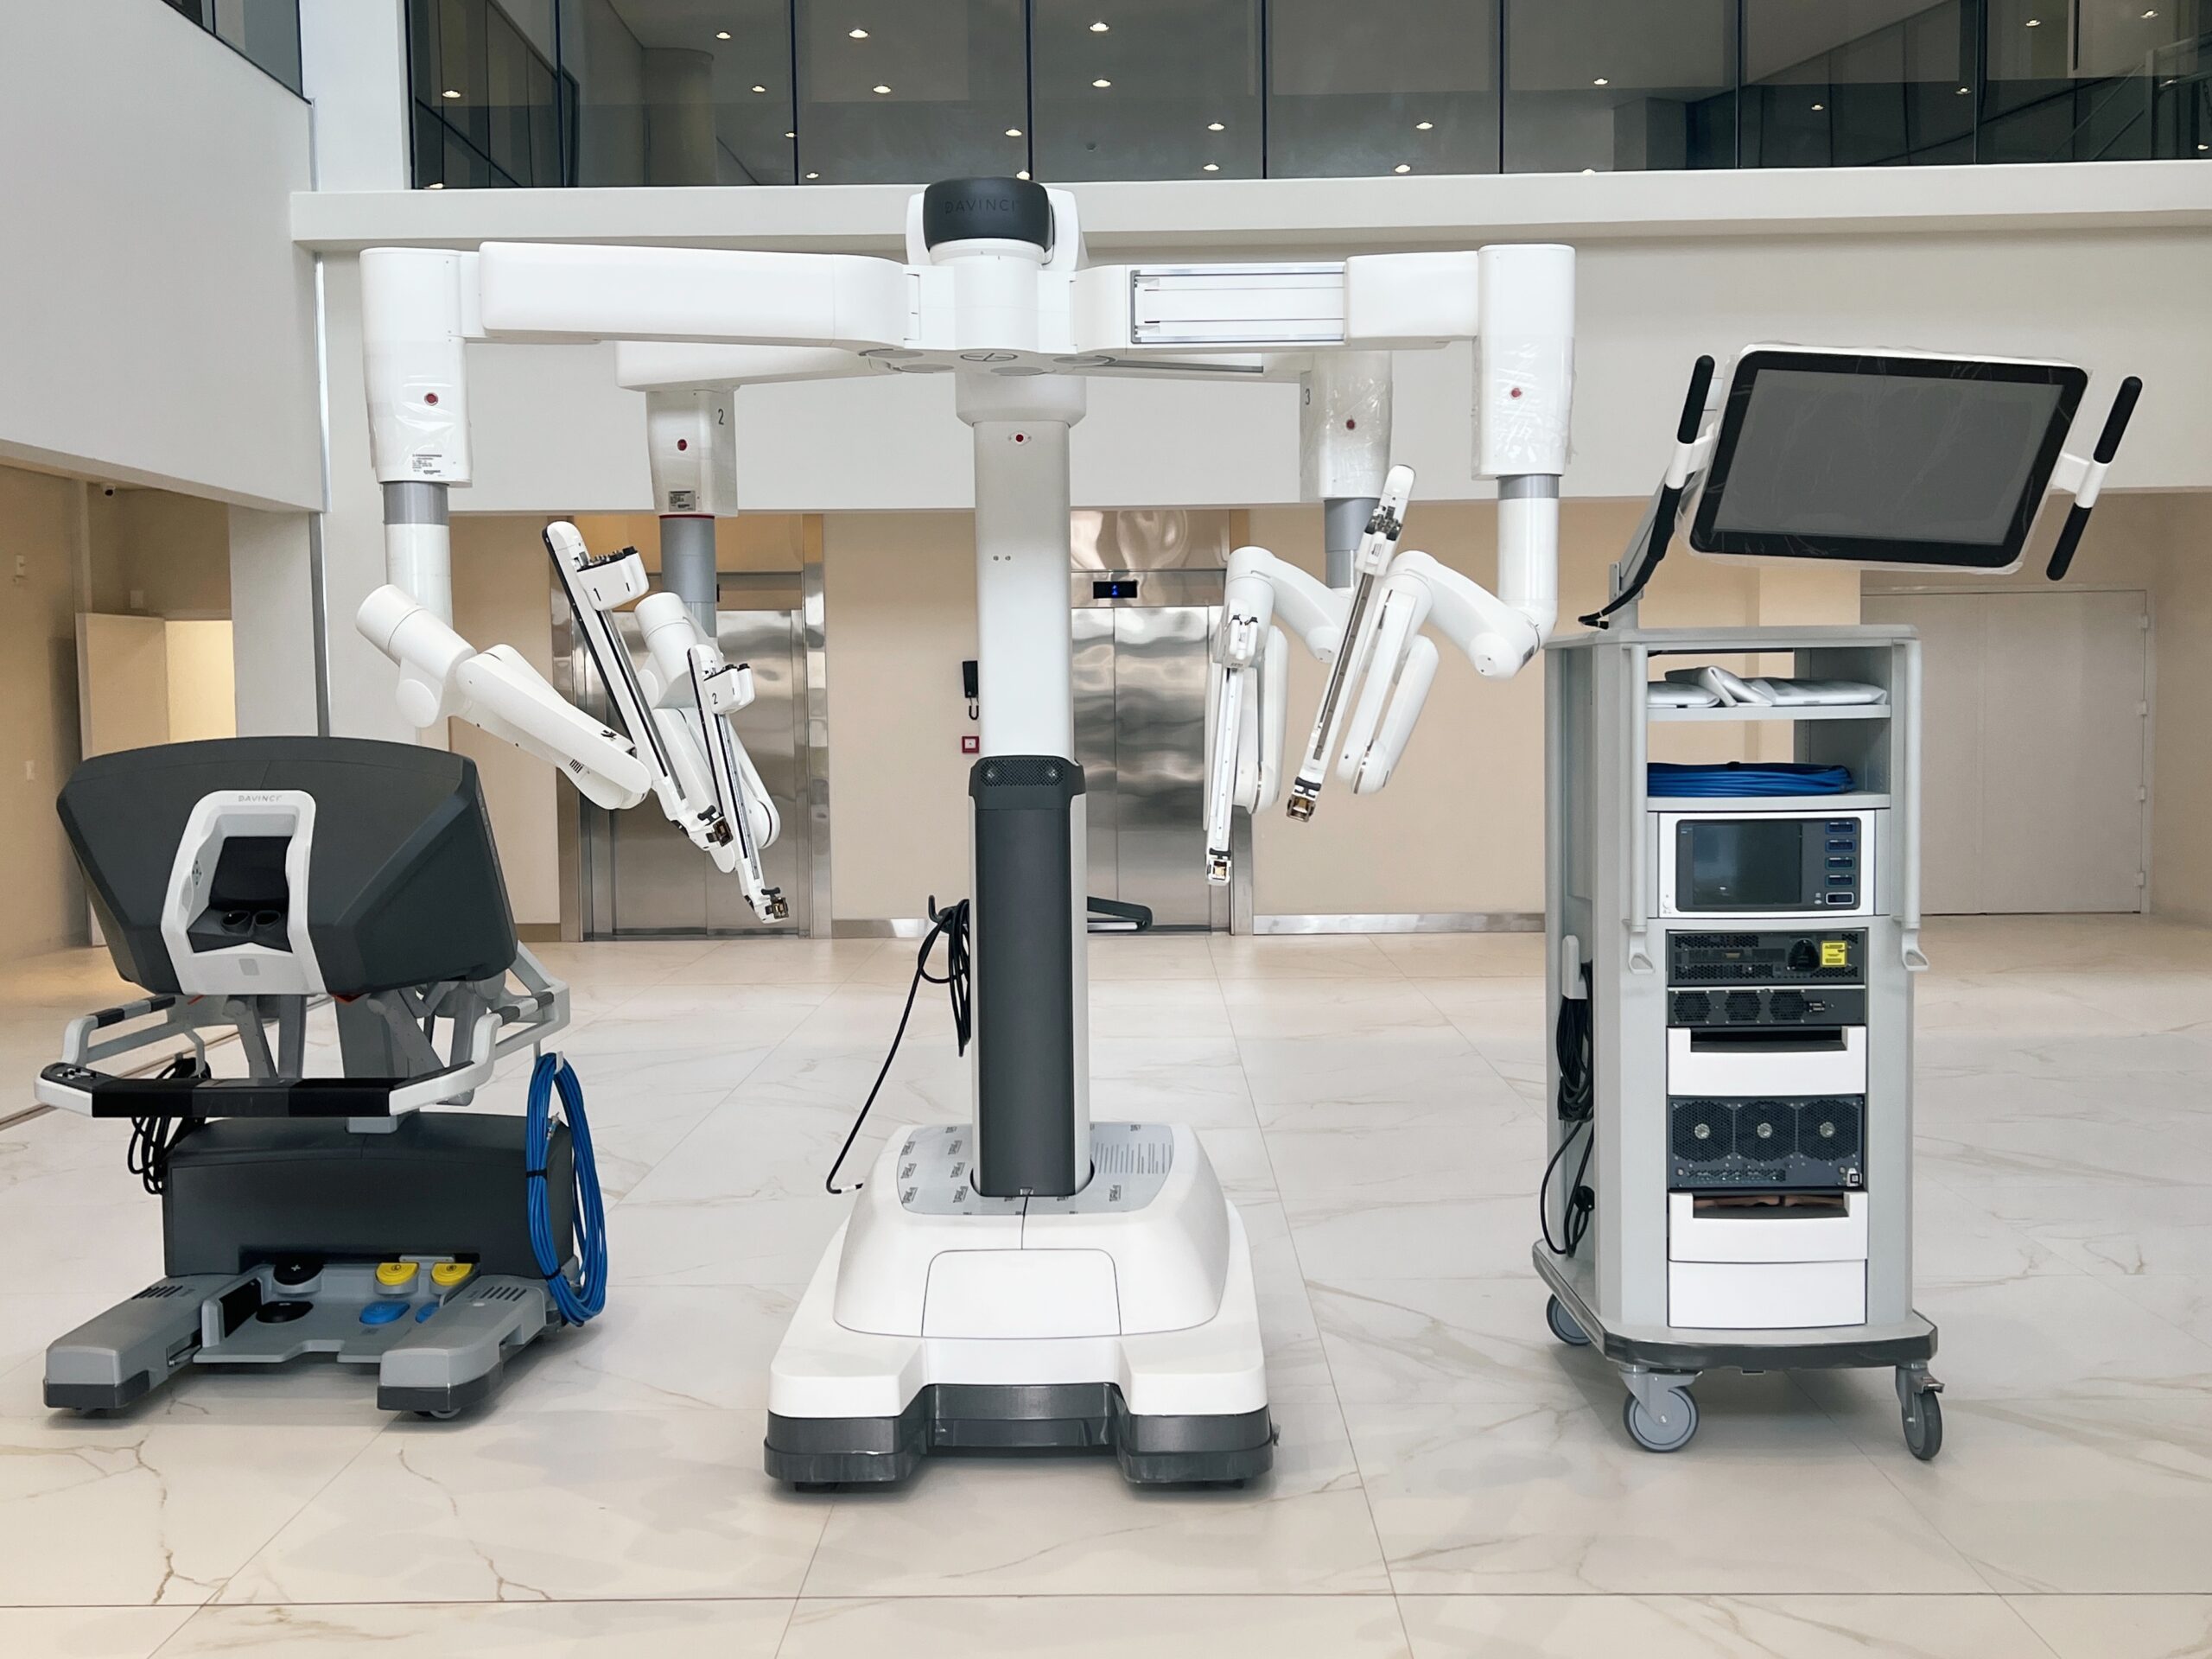 Cancer Center of São Vicente celebrates the arrival of robotic surgery equipment